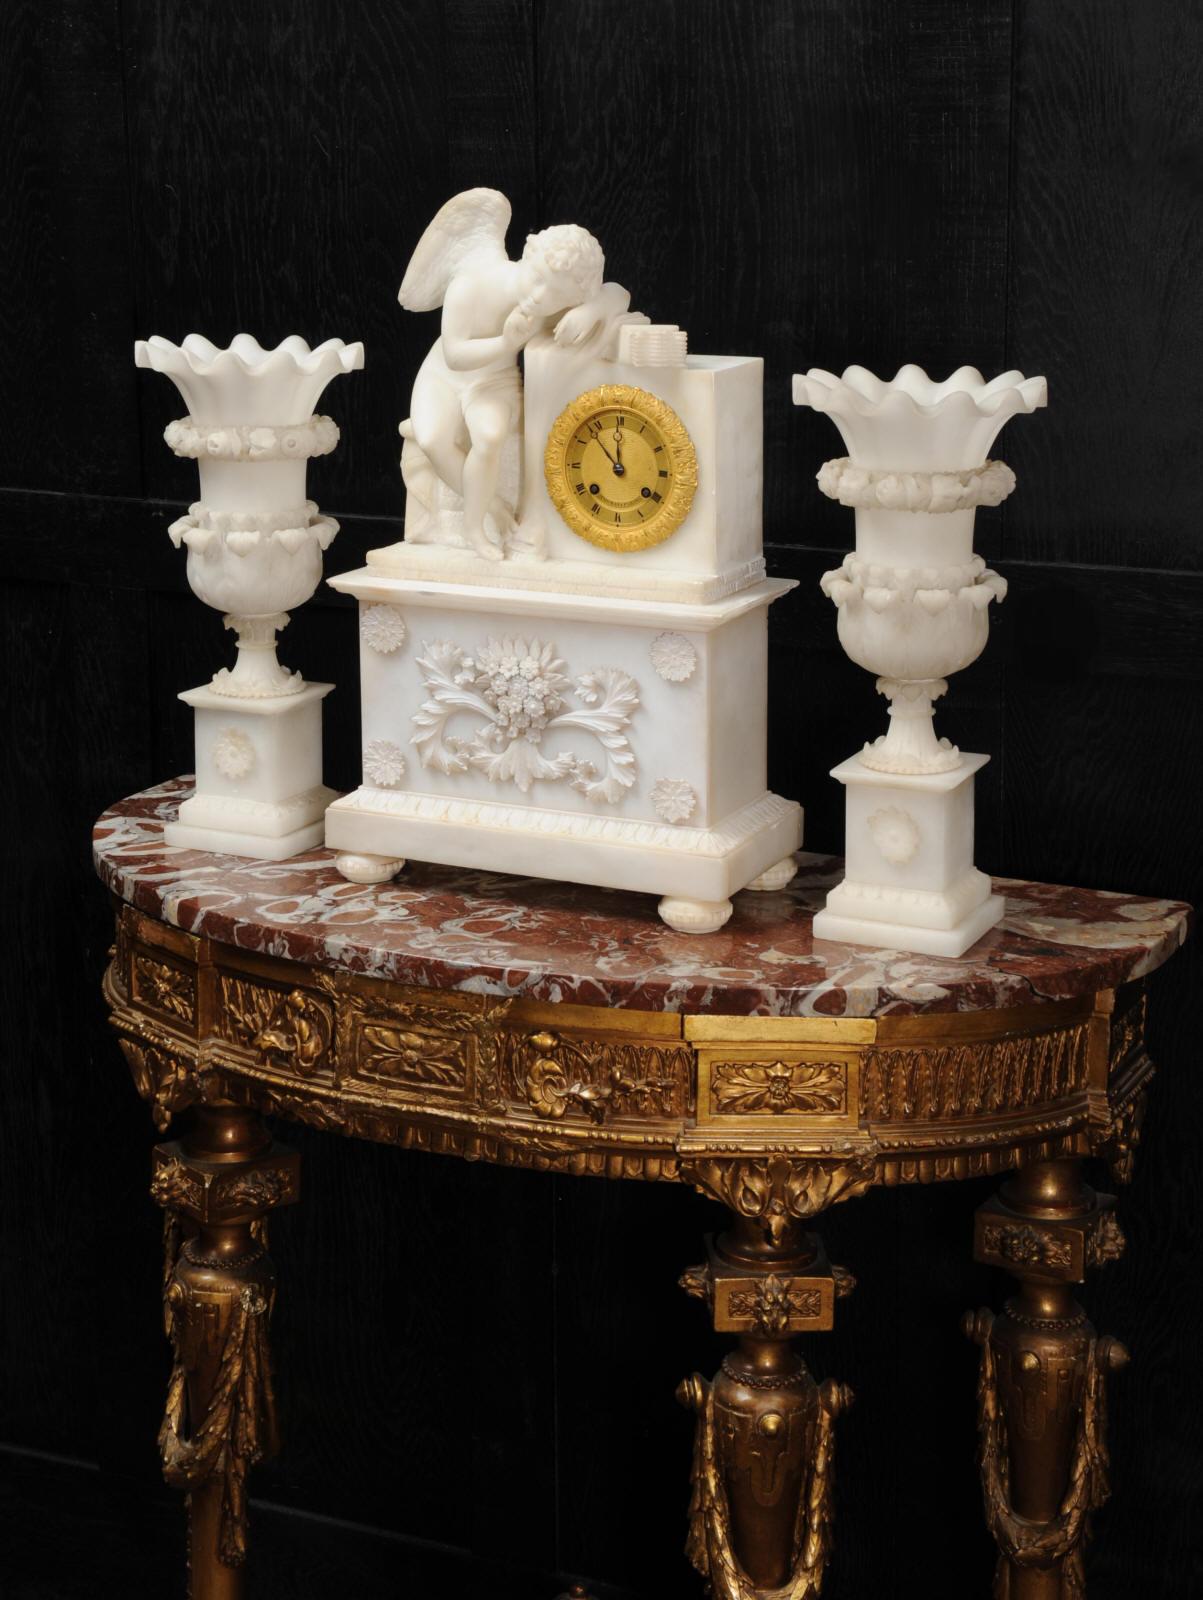 Ein frühes und wunderschönes Uhrenset, um 1820, mit einer bezaubernden Amor-Figur, L'Amour Menaçant (Bedrohliche Liebe), nach der berühmten Skulptur von Falconet, die sich heute im Louvre befindet. Sie ist wunderschön aus strahlend weißem Alabaster